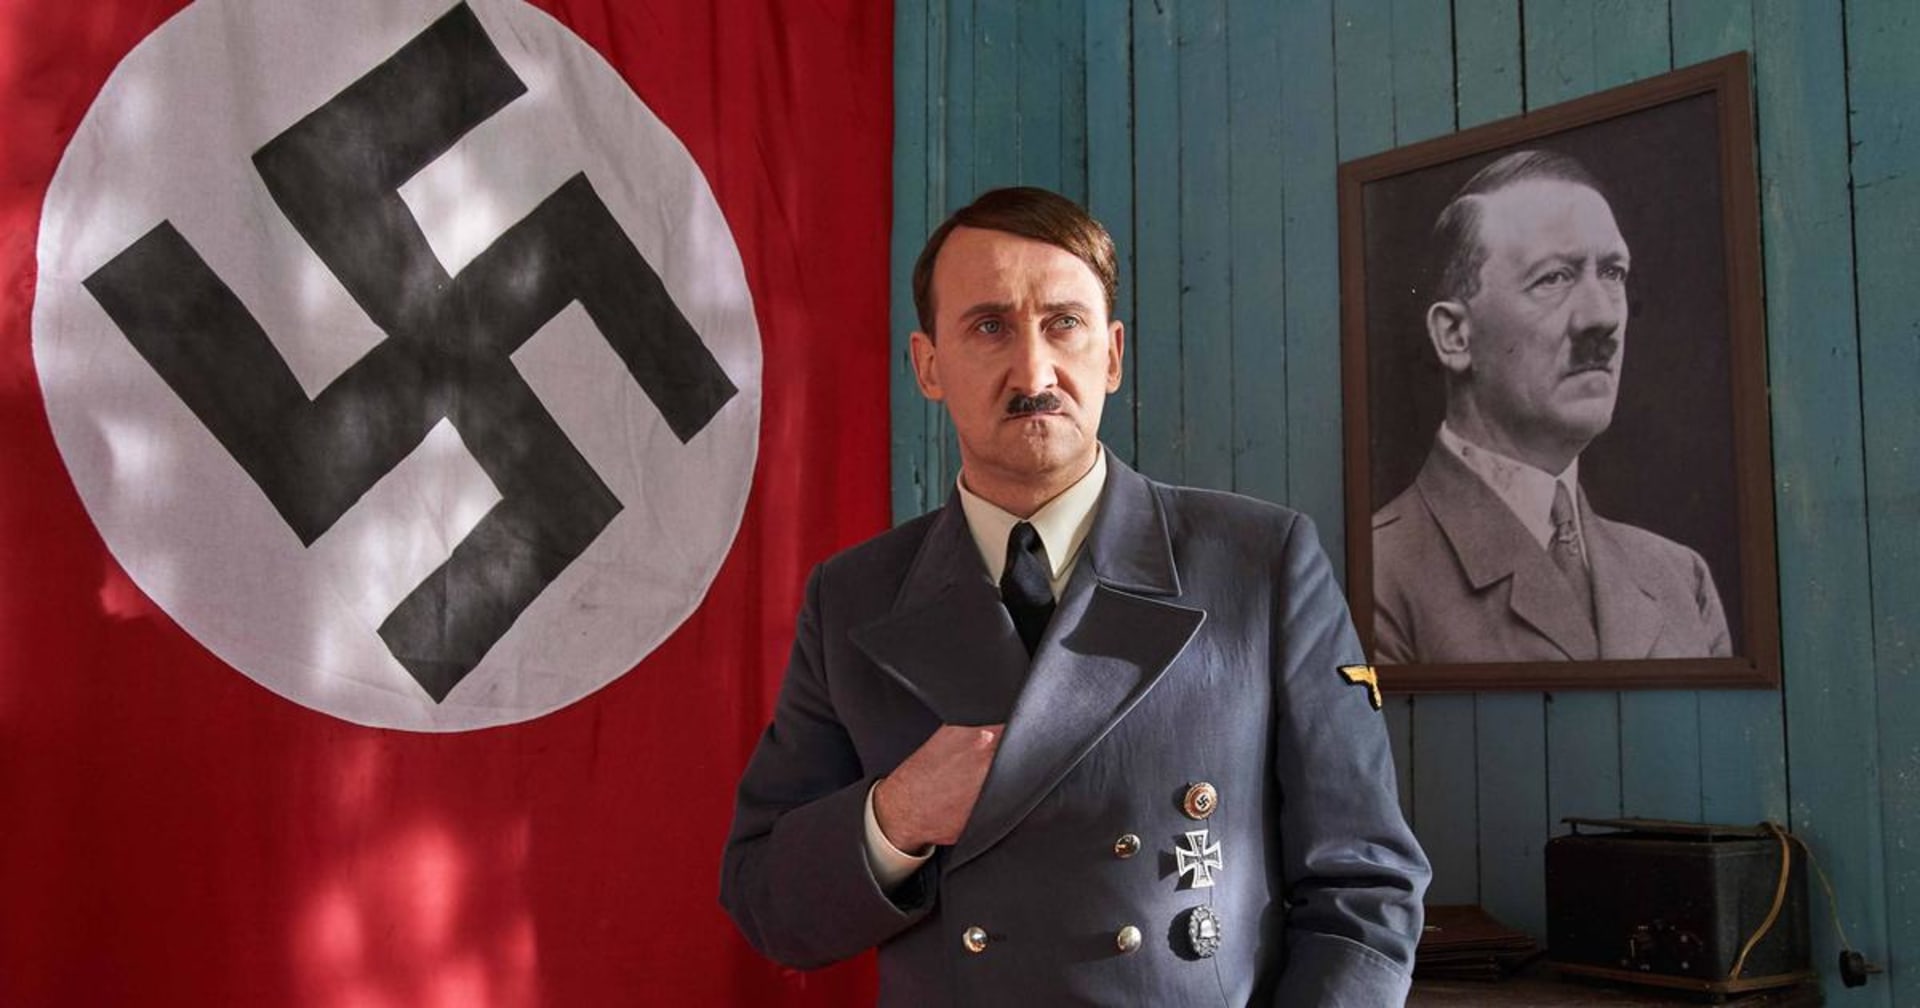 Ani jeden z více než 30 pokusů zabít Adolfa Hitlera neuspěl